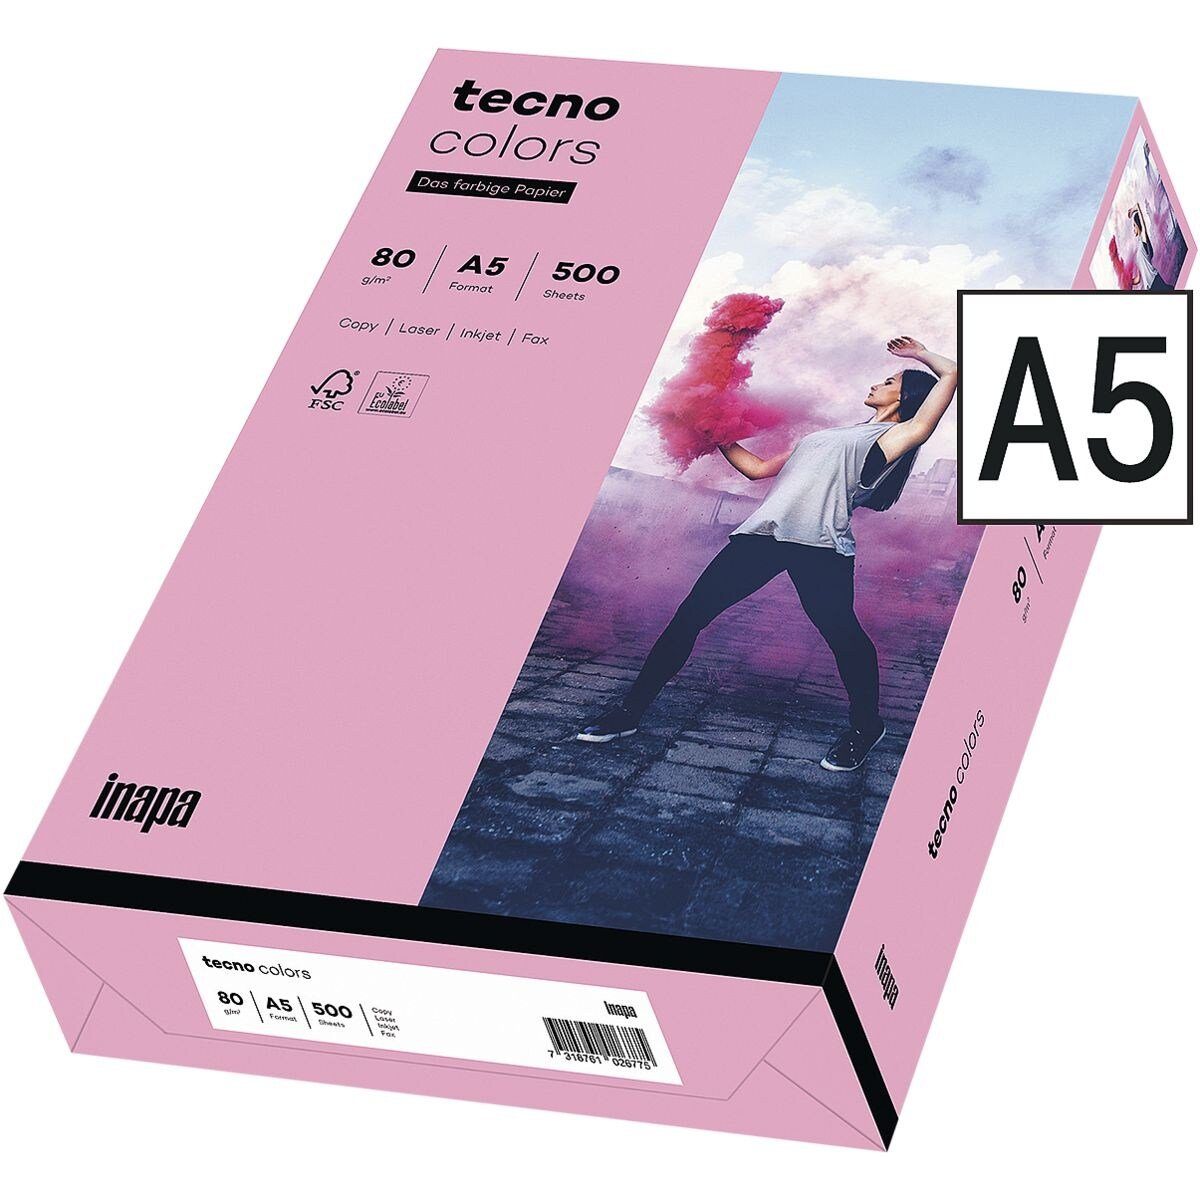 Inapa tecno Drucker- und Kopierpapier Rainbow, Pastellfarben, Format DIN A5, 80 g/m² rosa